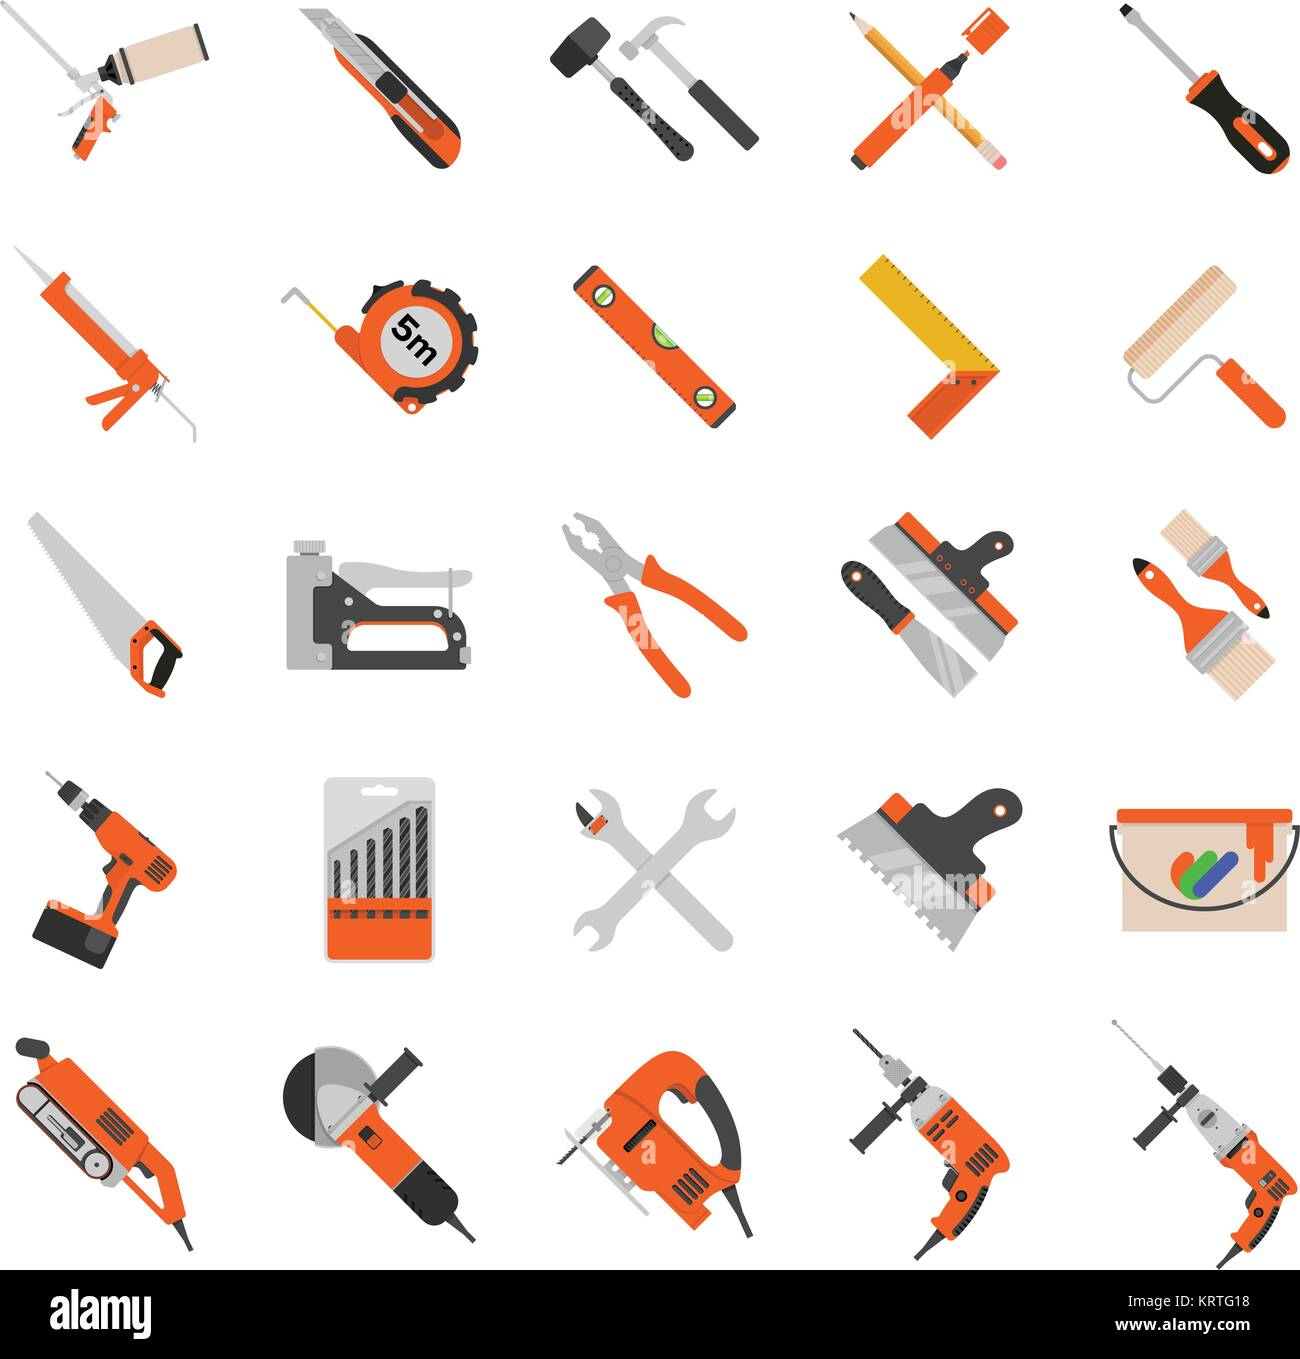 Home Reparatur Werkzeuge Vector Icons. Reparatur Werkzeuge für Reparatur  und Konstruktion. Bohrmaschine, Säge, Hammer, Schraubenzieher und anderen  Bau t Stock-Vektorgrafik - Alamy